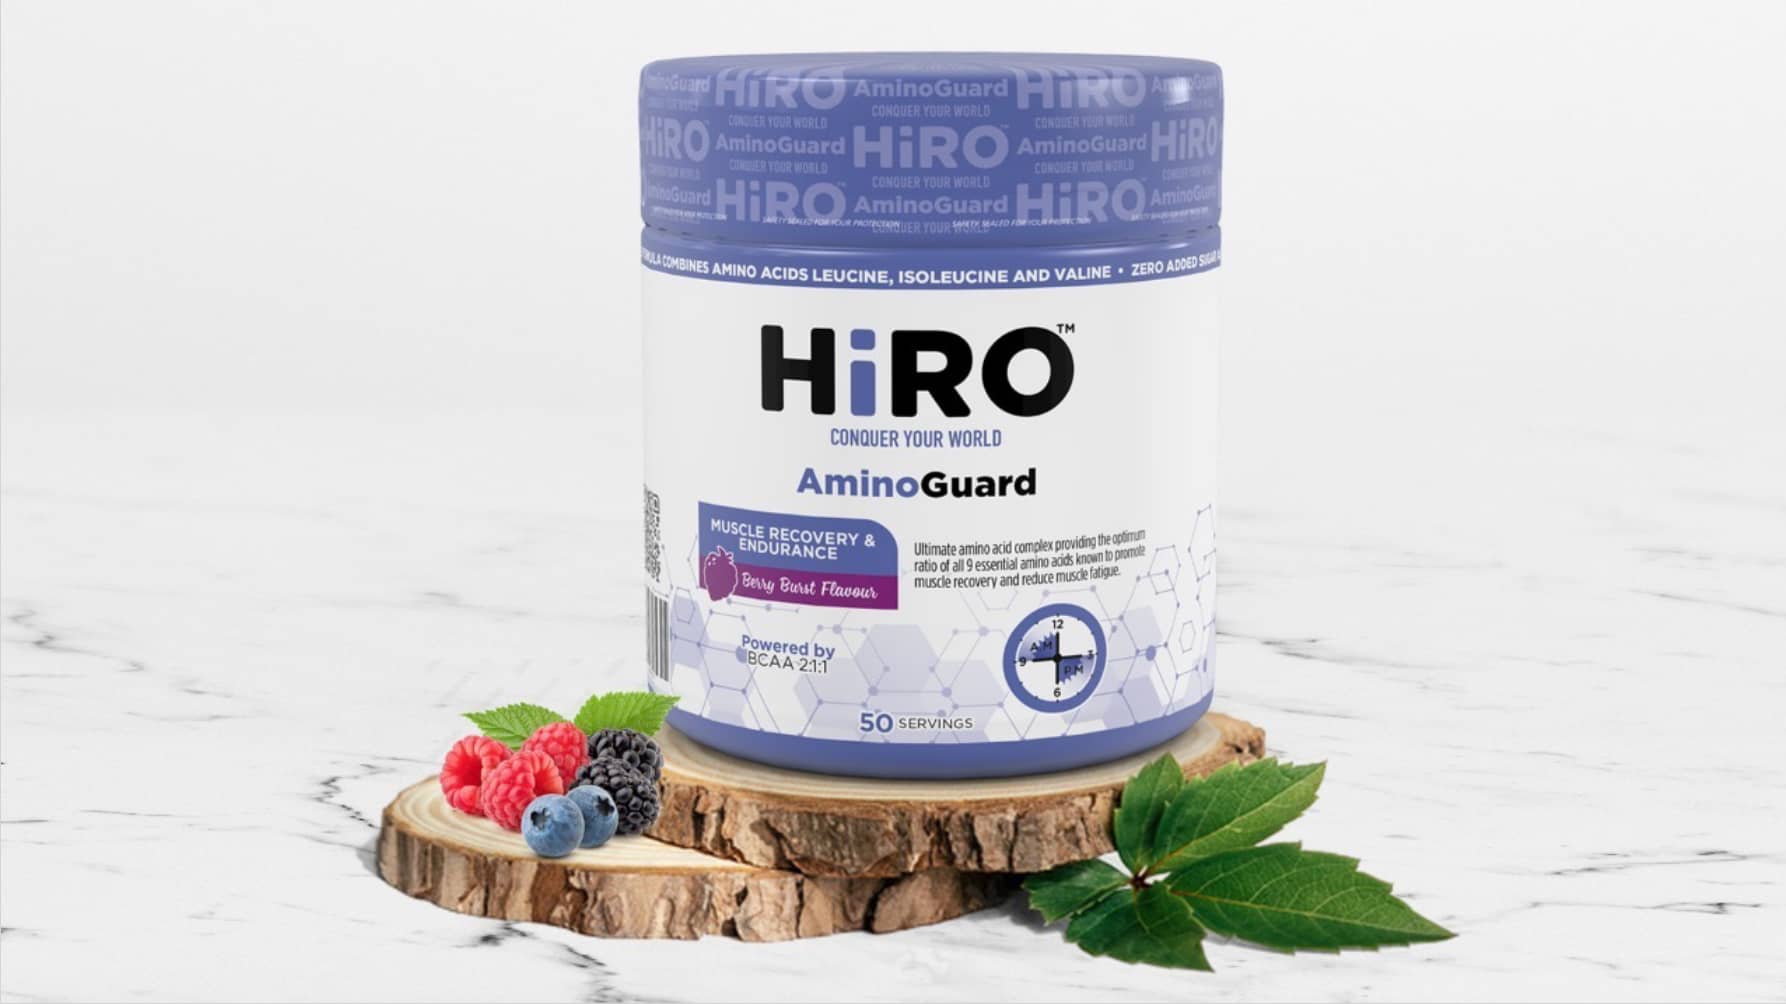 Hiro aminoguard front image